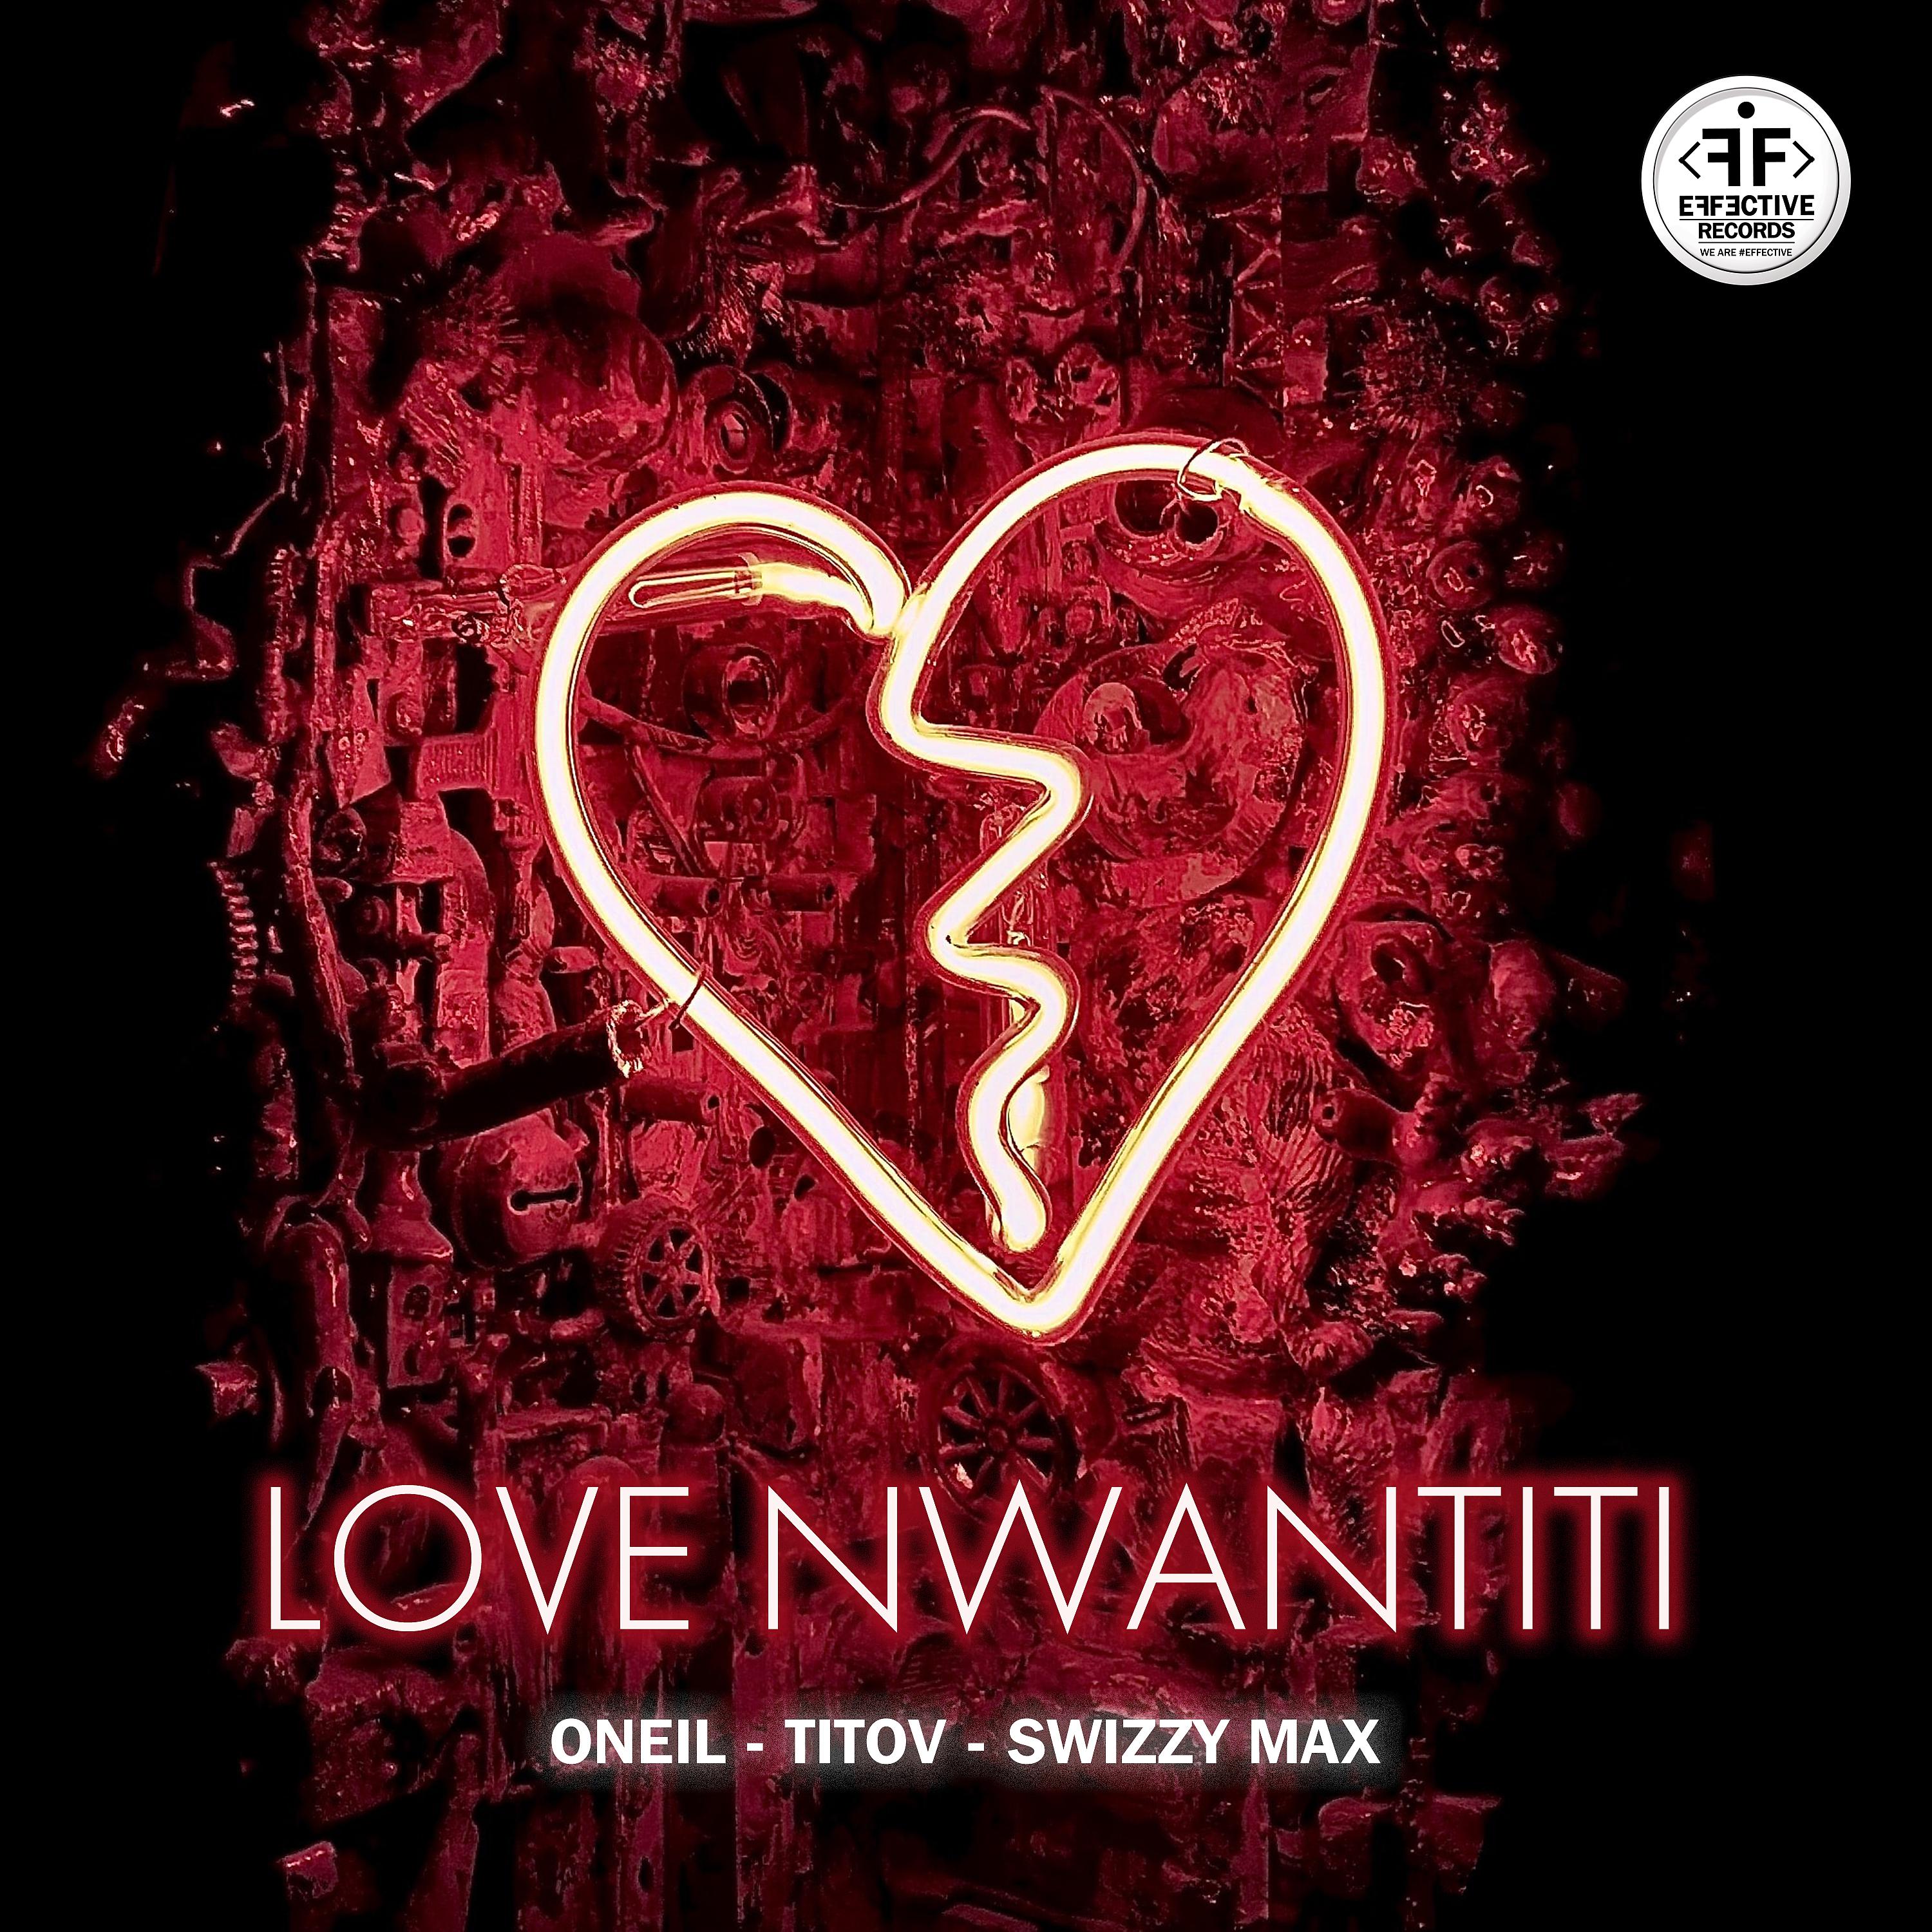 Макс лове. Love Nwantiti. Любовь. Песня Love Nwantiti. Love Nwantiti альбом.